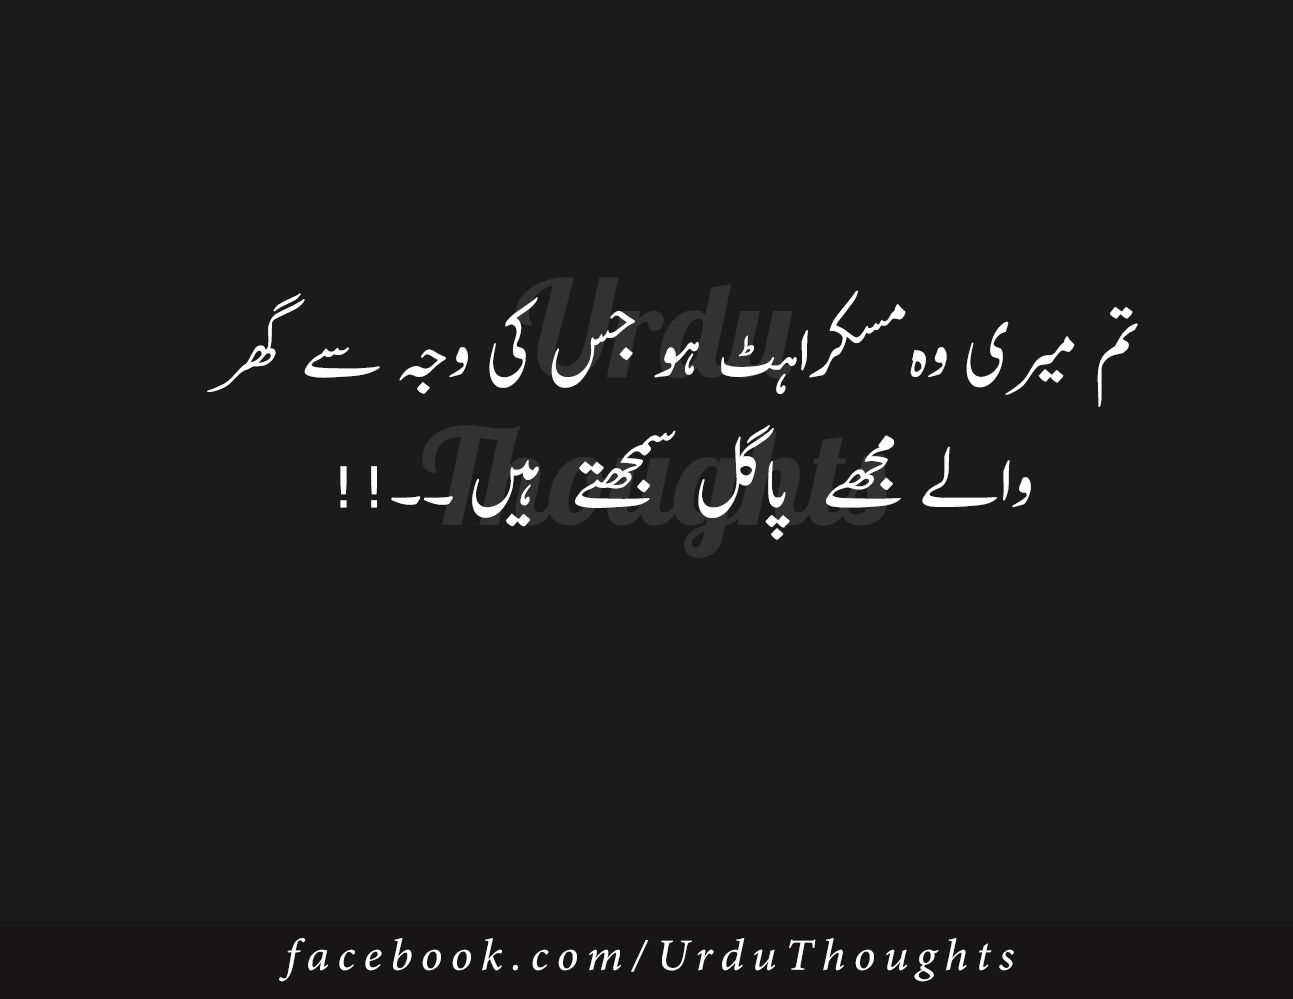 Urdu Thoughts Alfaz Image Black Background Love